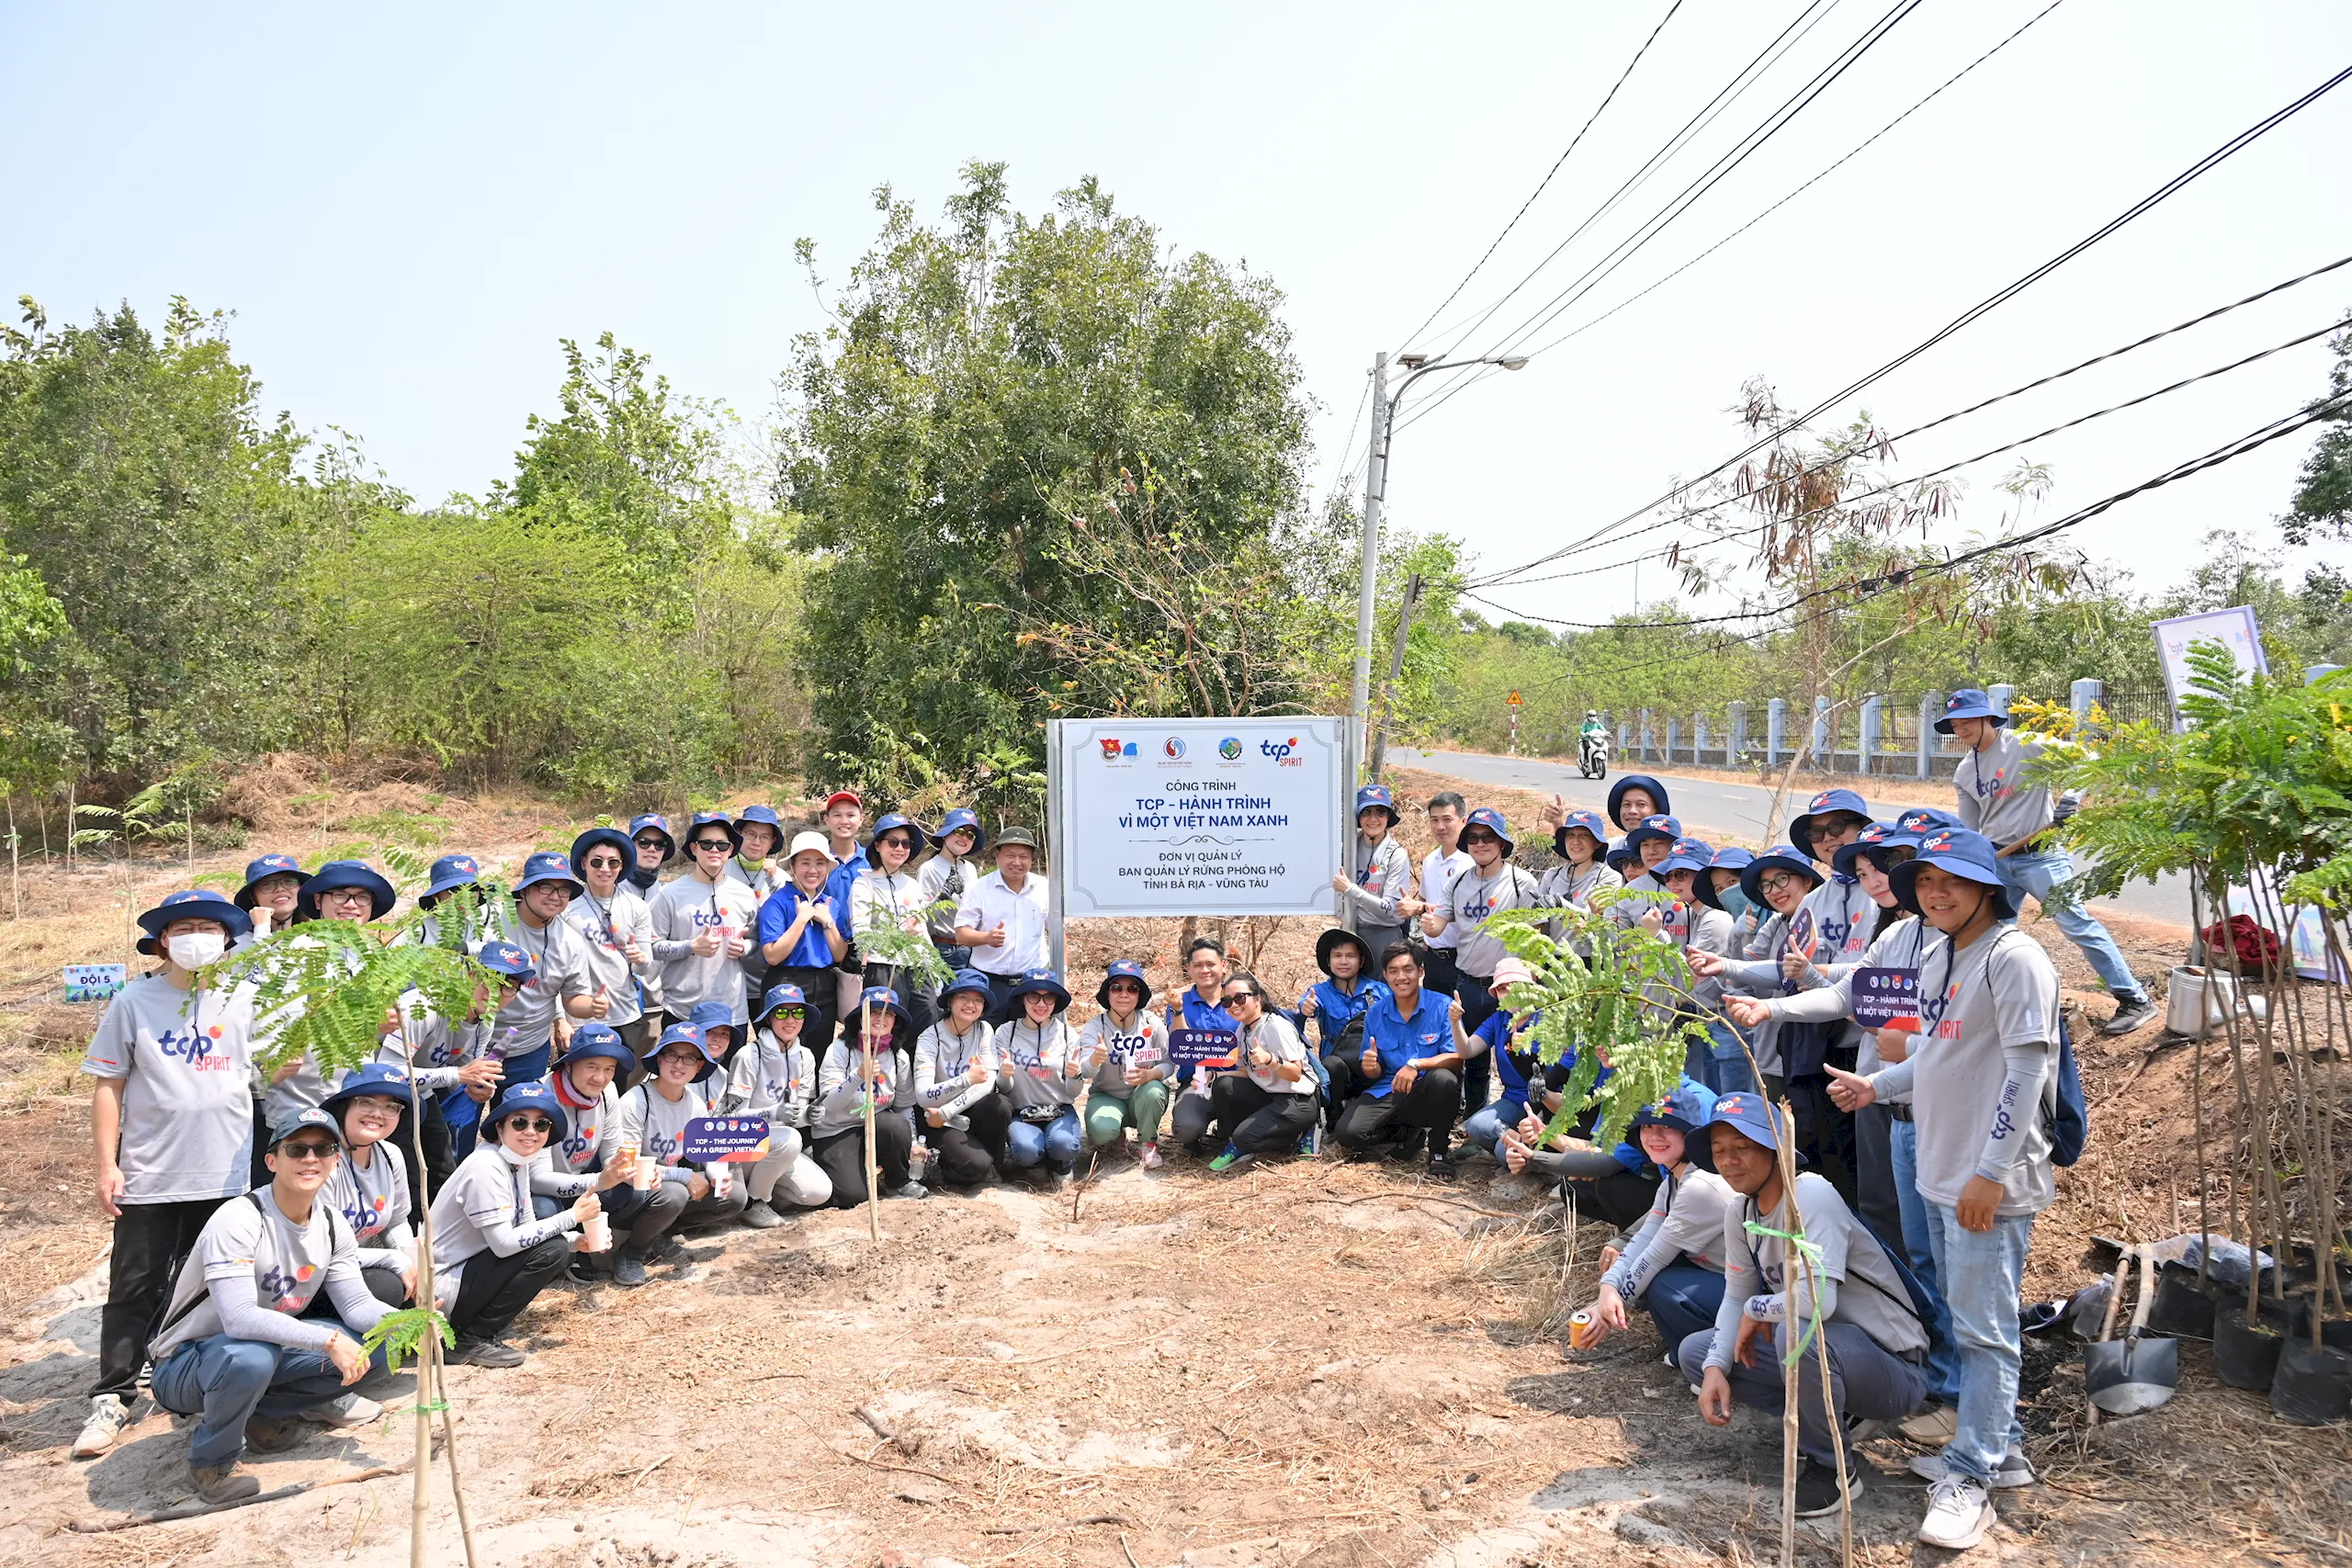 Khởi động chương trình “TCP – Hành trình vì một Việt Nam xanh” chung sức trồng 2,700 cây xanh tại tỉnh Bà Rịa - Vũng Tàu